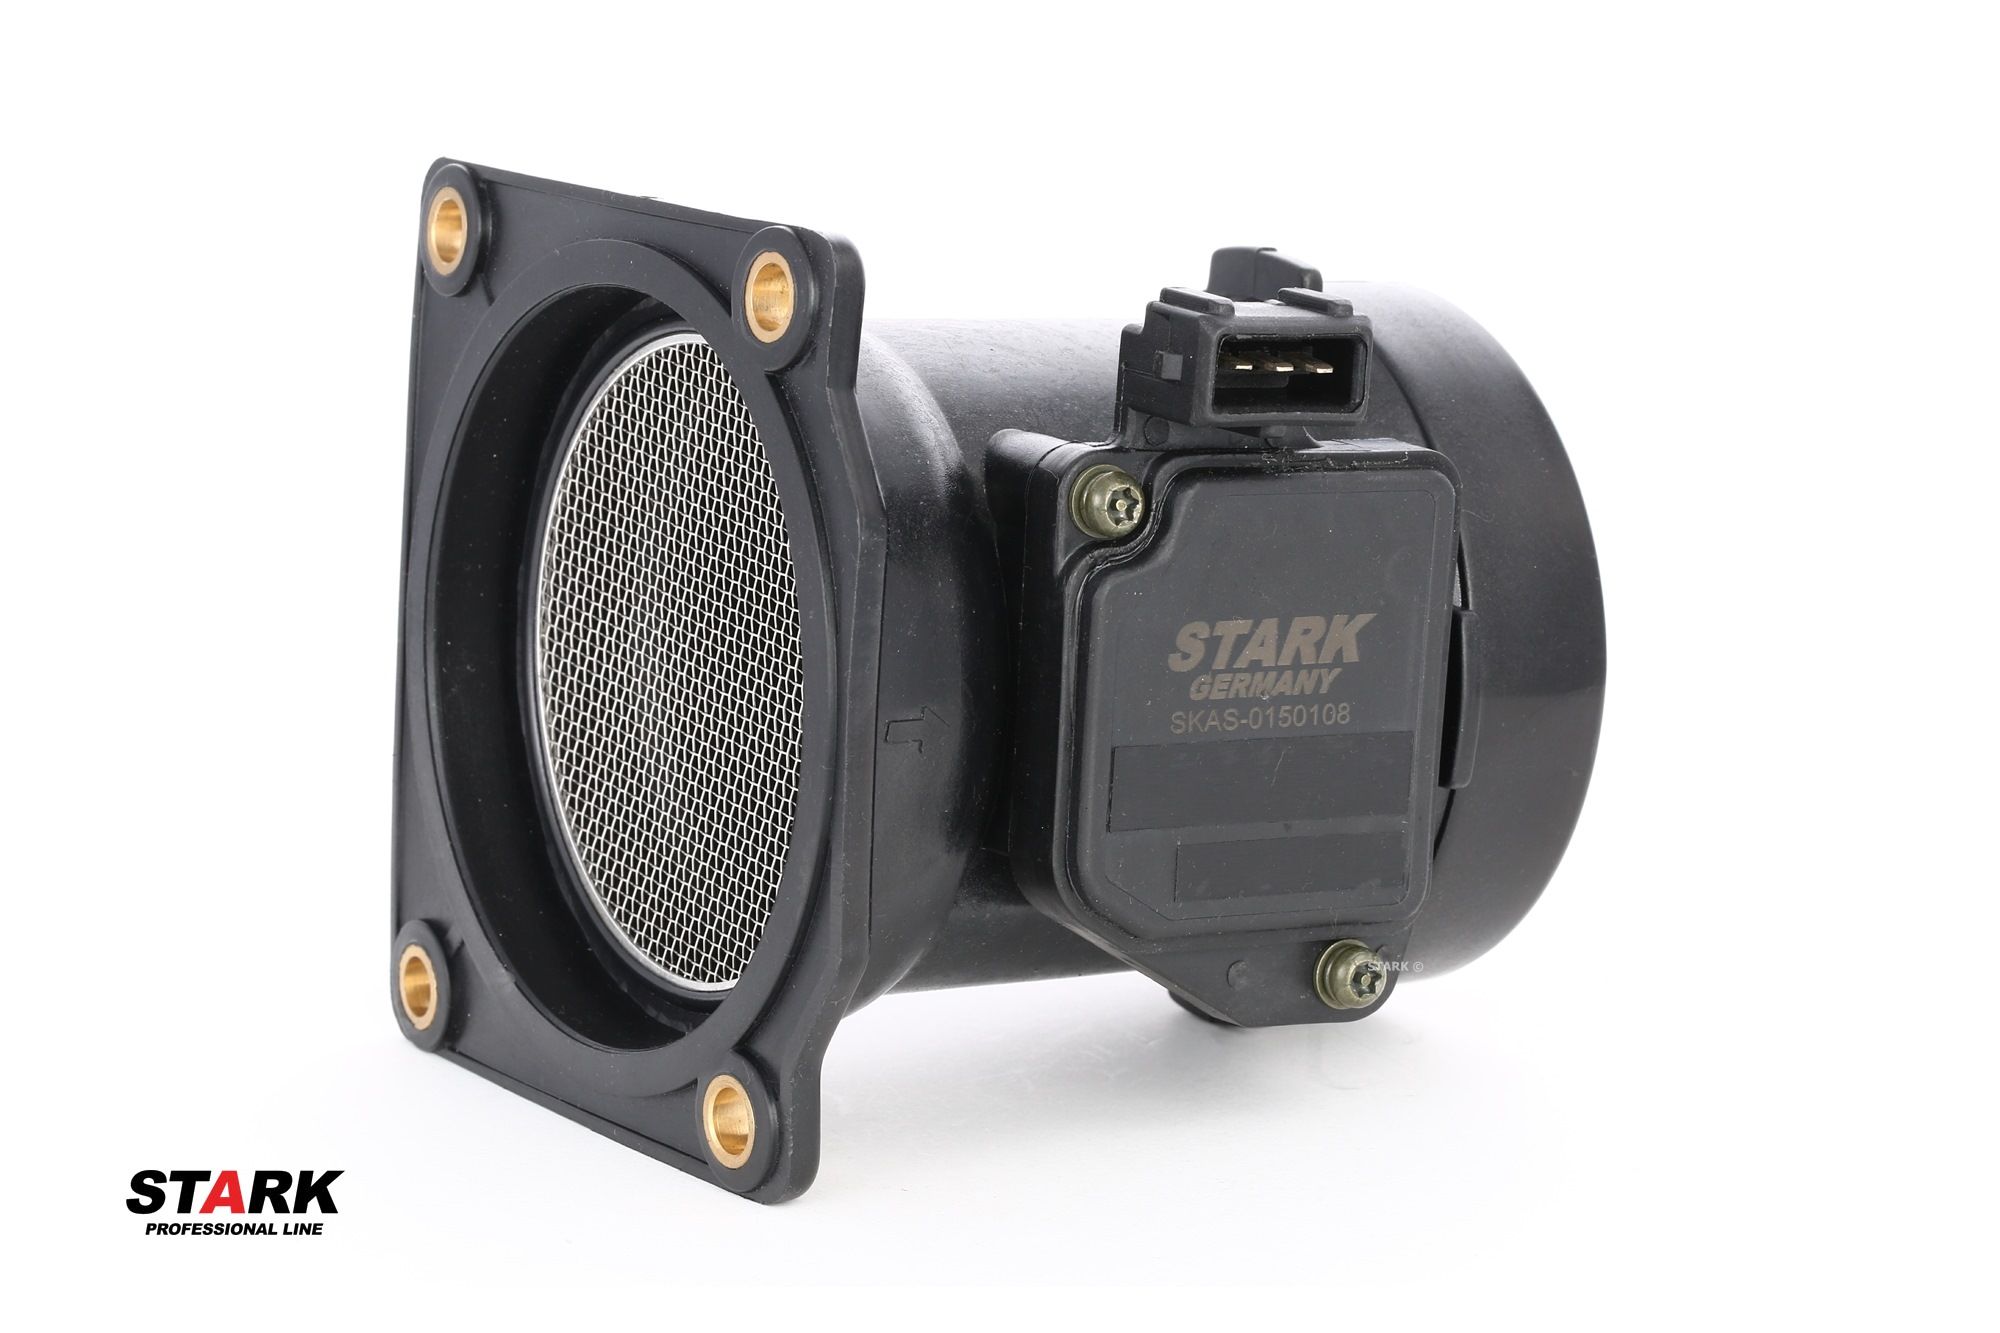 STARK SKAS-0150108 Mass air flow sensor with housing